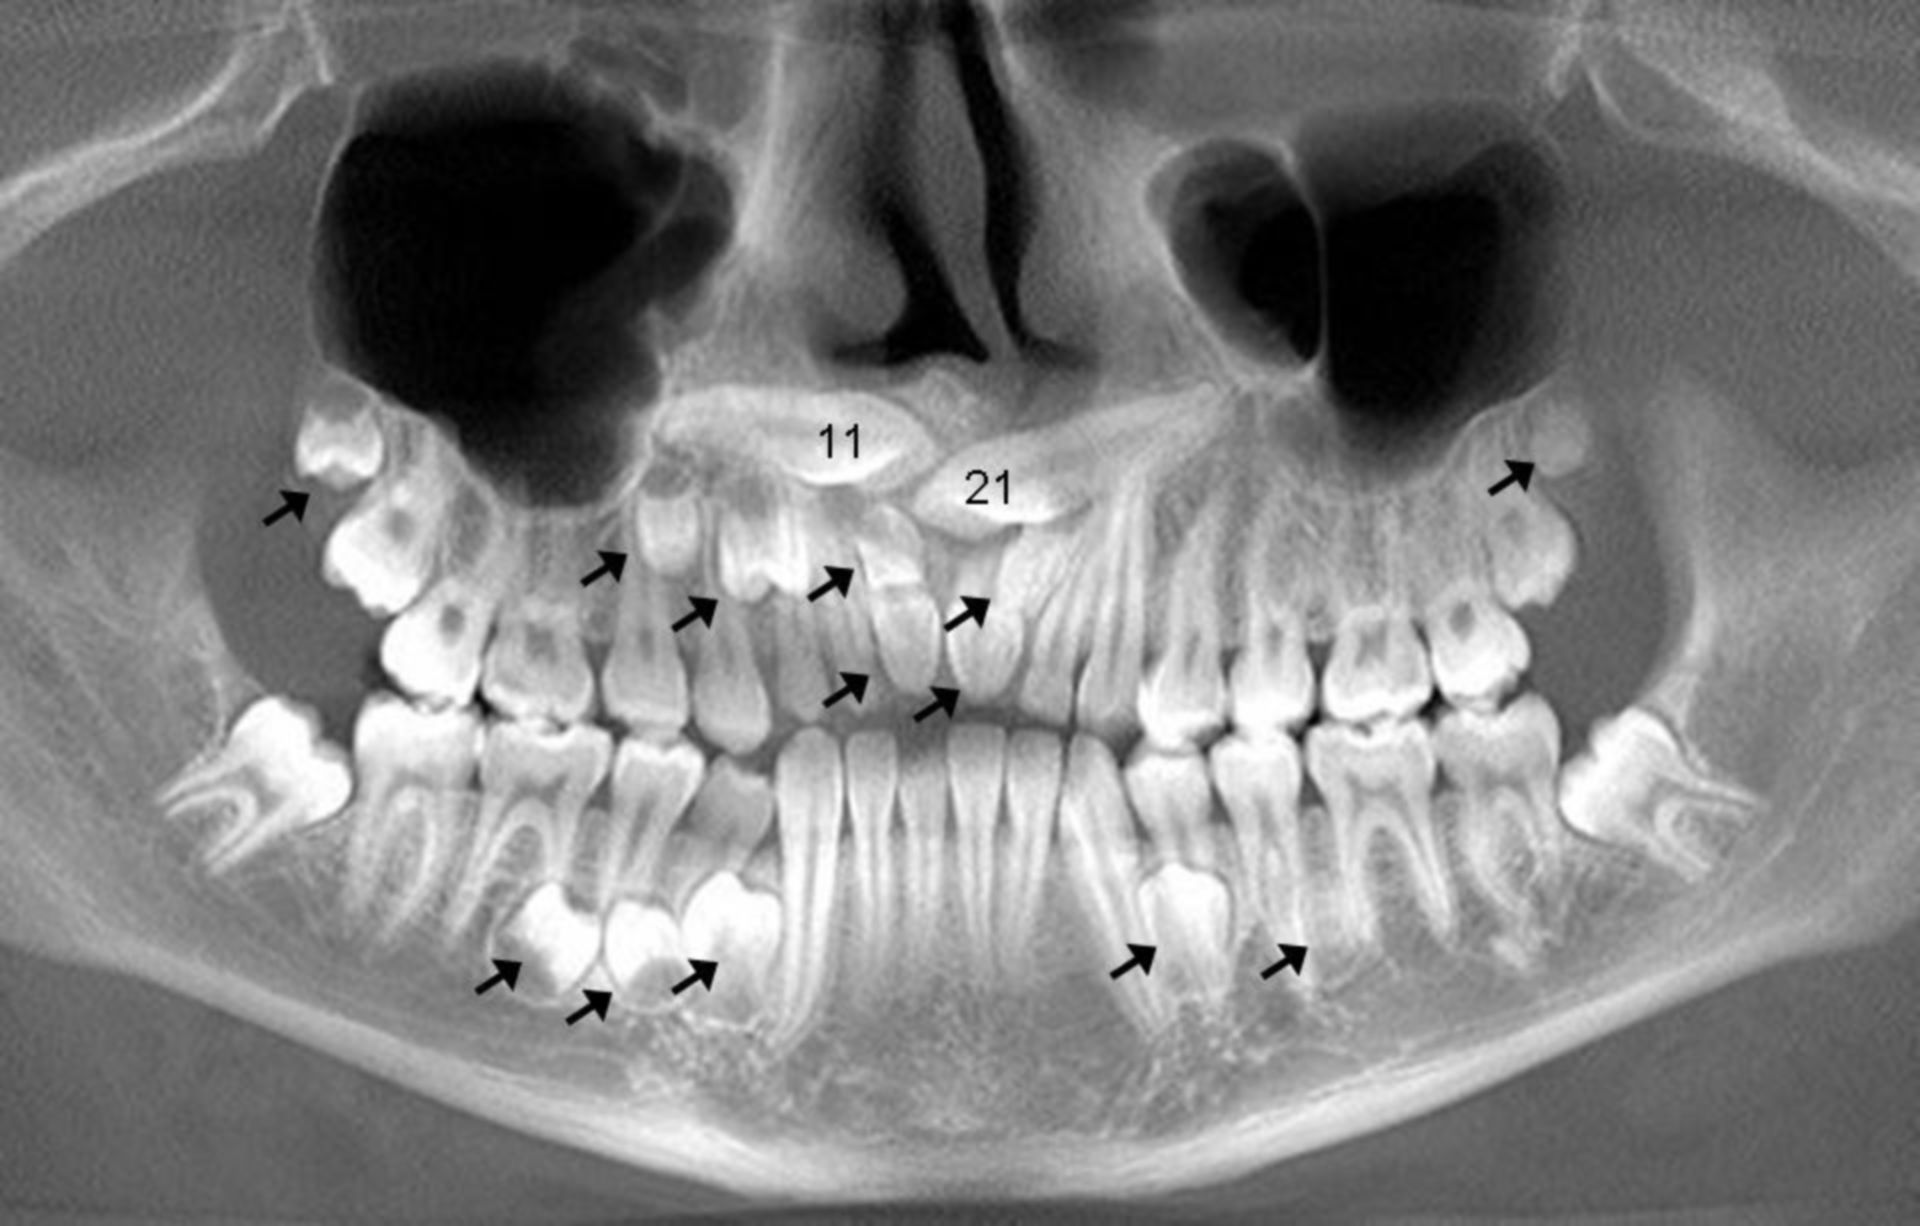 Multiple, supernumerous teeth